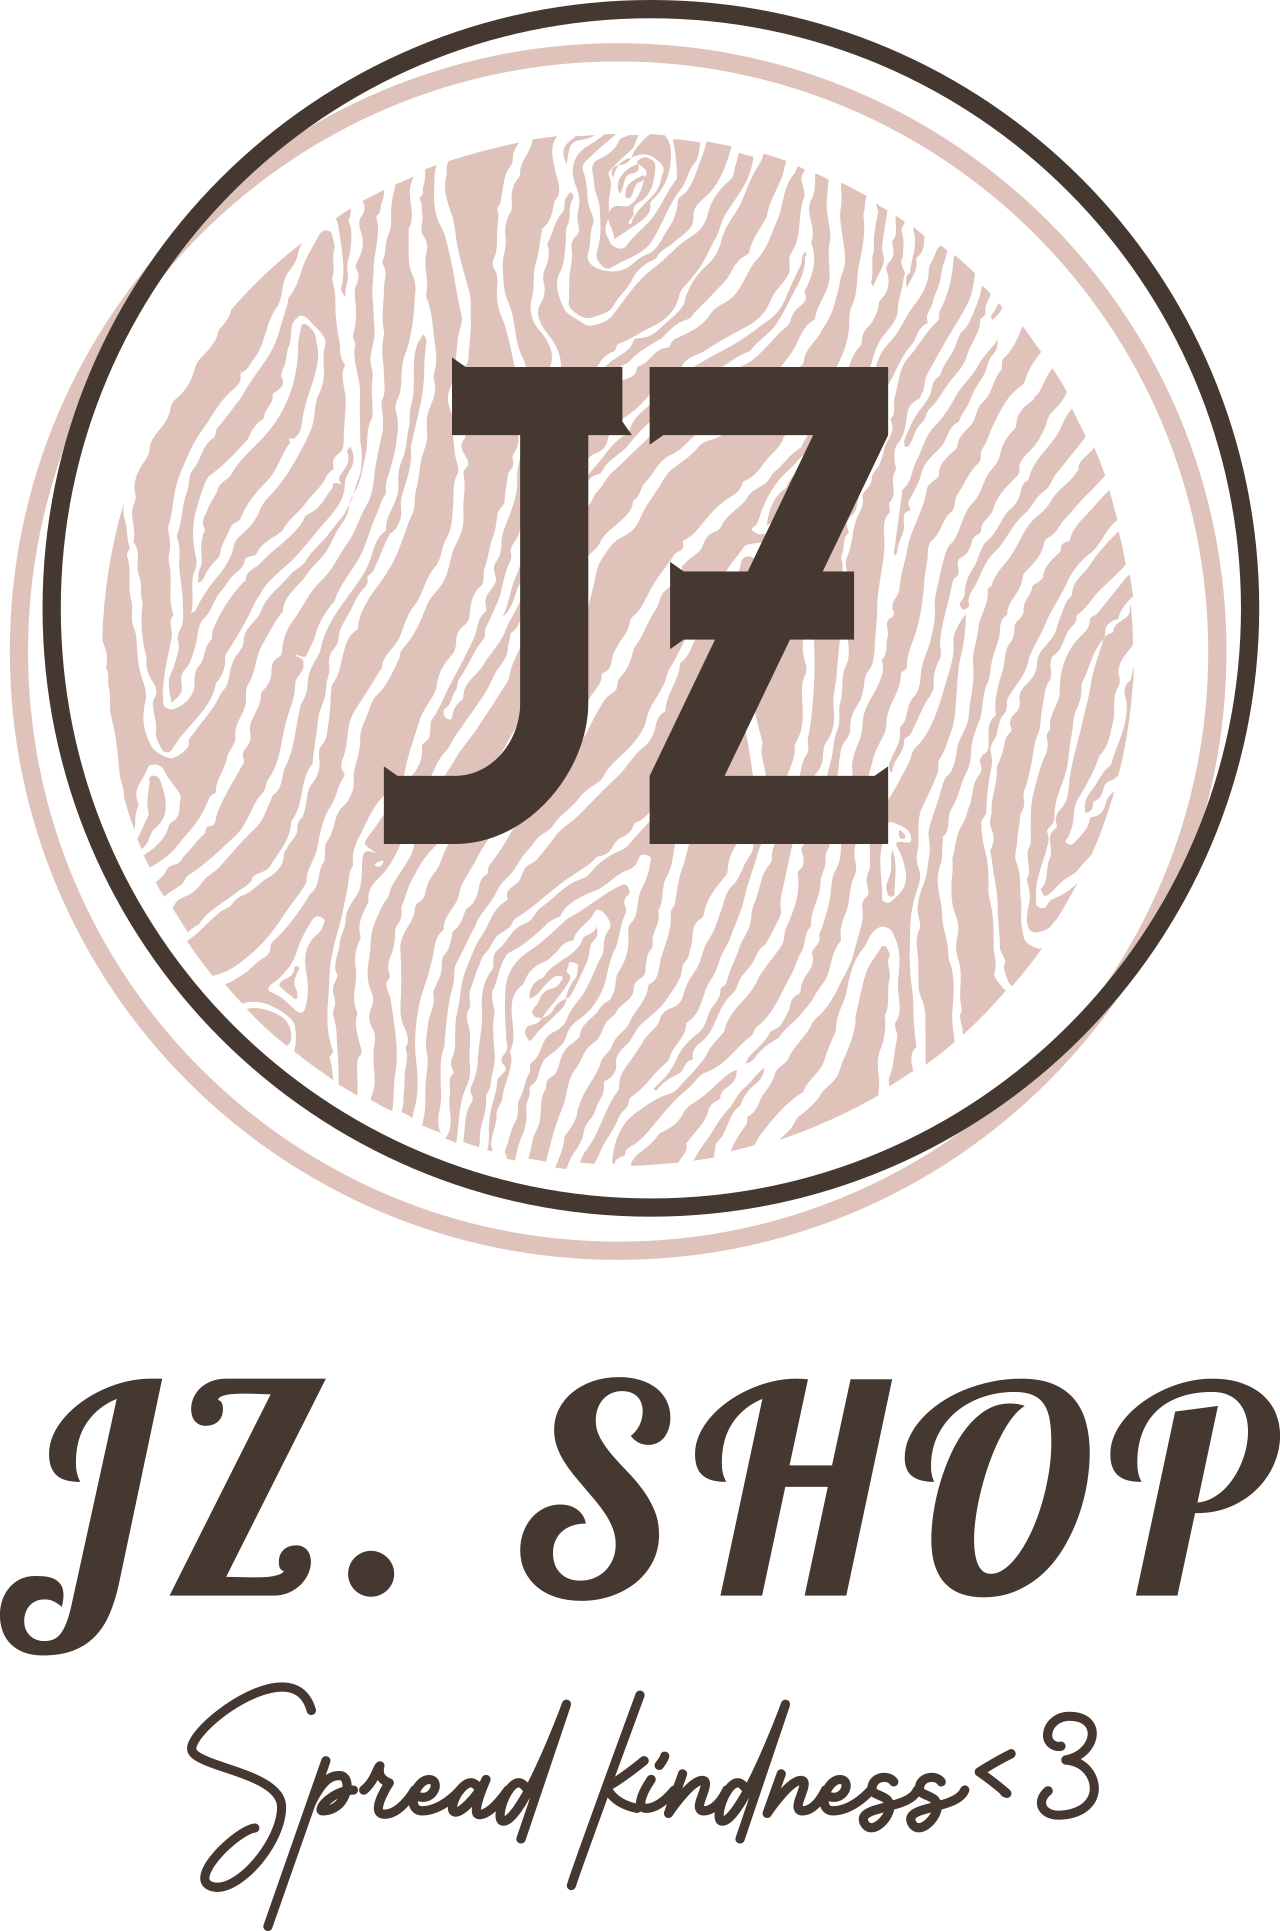 jz. shop's web page